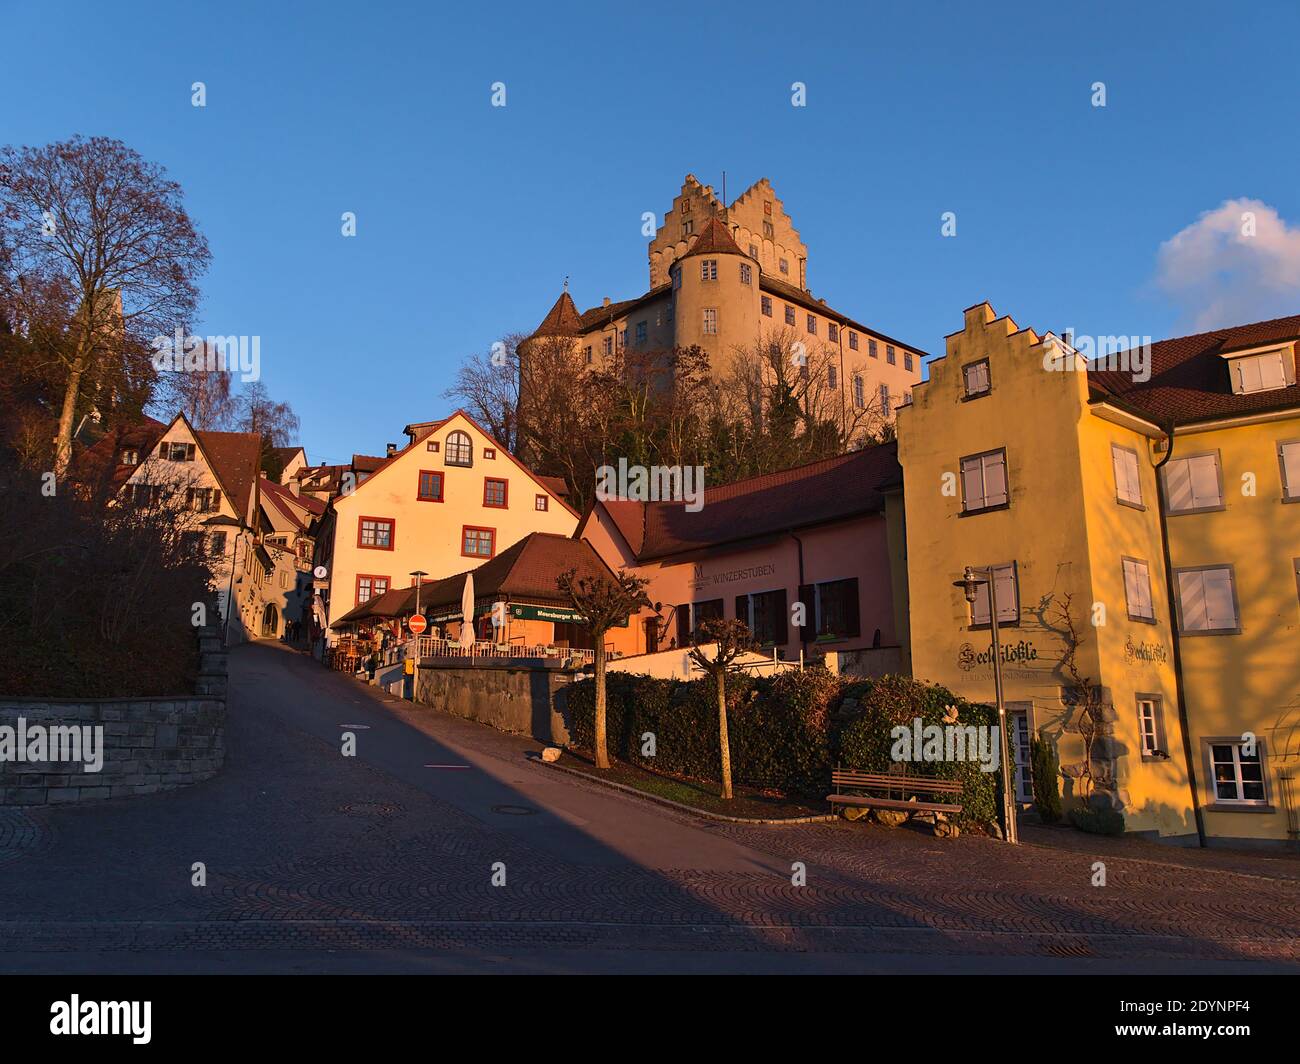 Bella vista del centro storico con vuota strada acciottolata, vecchi edifici e il simbolo castello di Meersburg sul pendio in luce notturna in inverno. Foto Stock